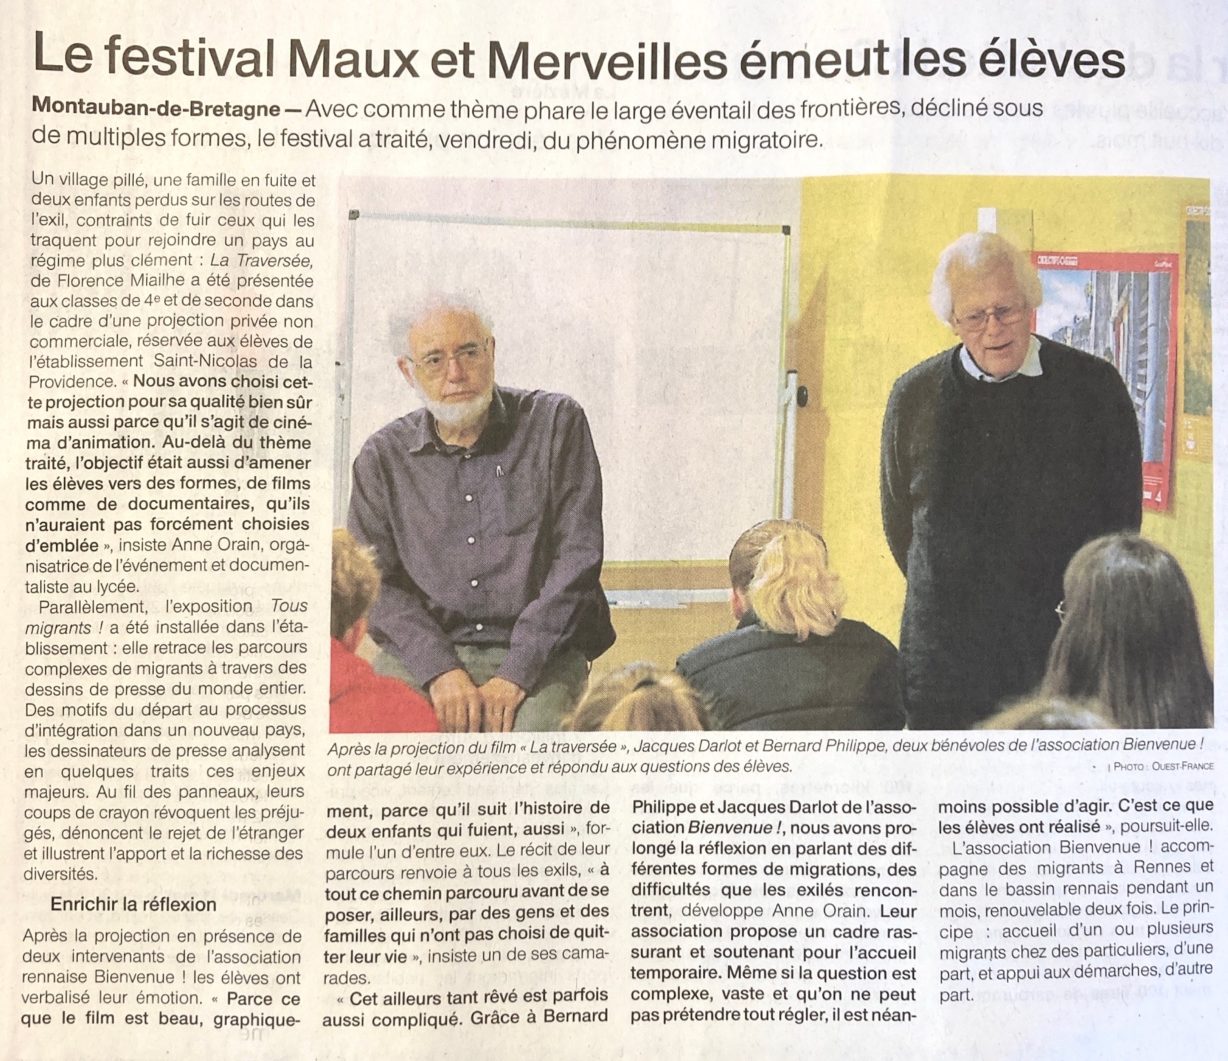 You are currently viewing Intervention au lycée de Montauban de Bretagne, dans le cadre du festival Maux et merveilles